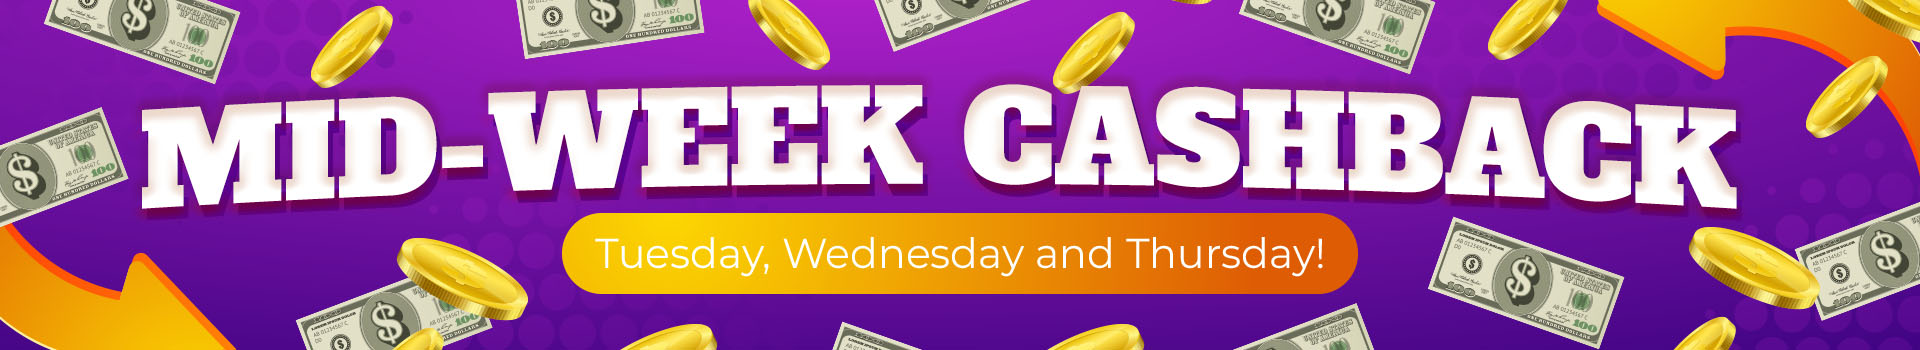 Mid-Week Cashback Banner